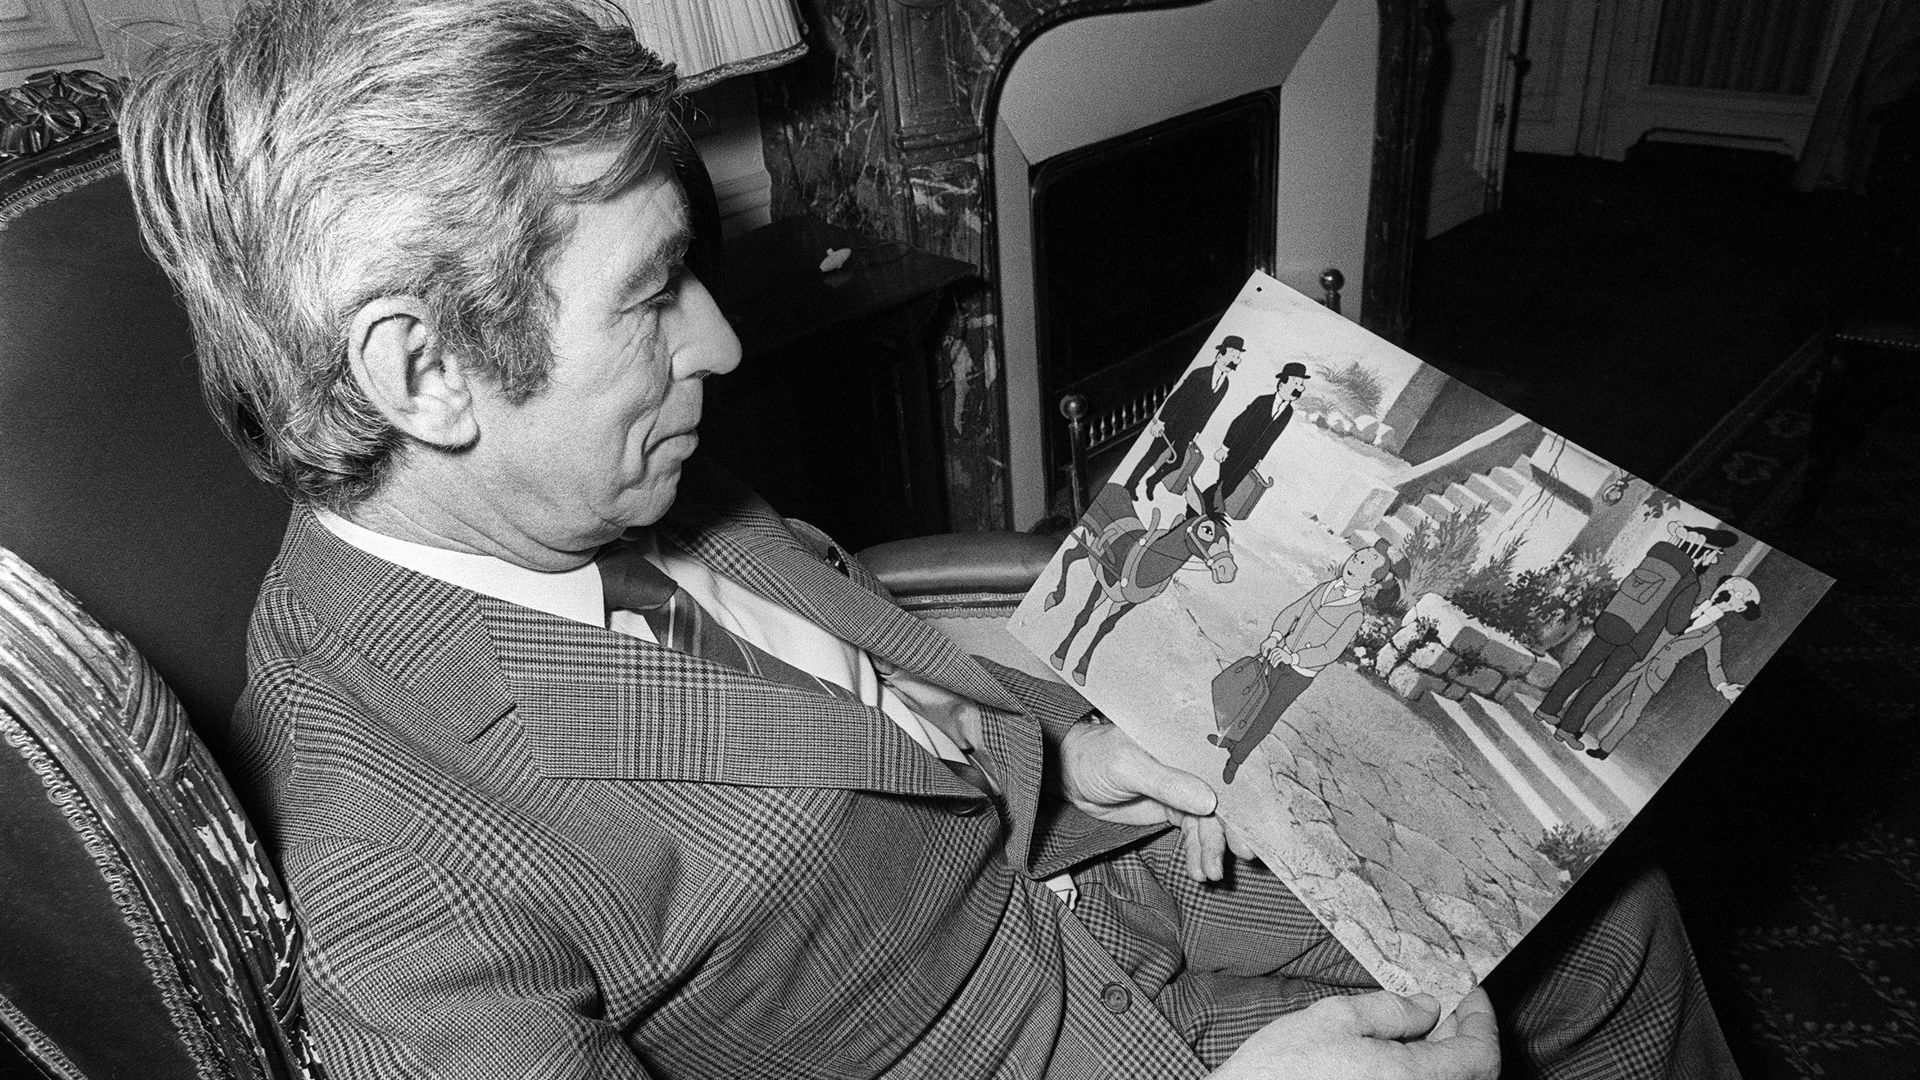 L’auteur de bande dessine Georges Remi, dit Hergé, créateur du personnage de Tintin, lit les dernières aventures de son héros, "Tintin et le lac aux requins", le 7 décembre 1972.